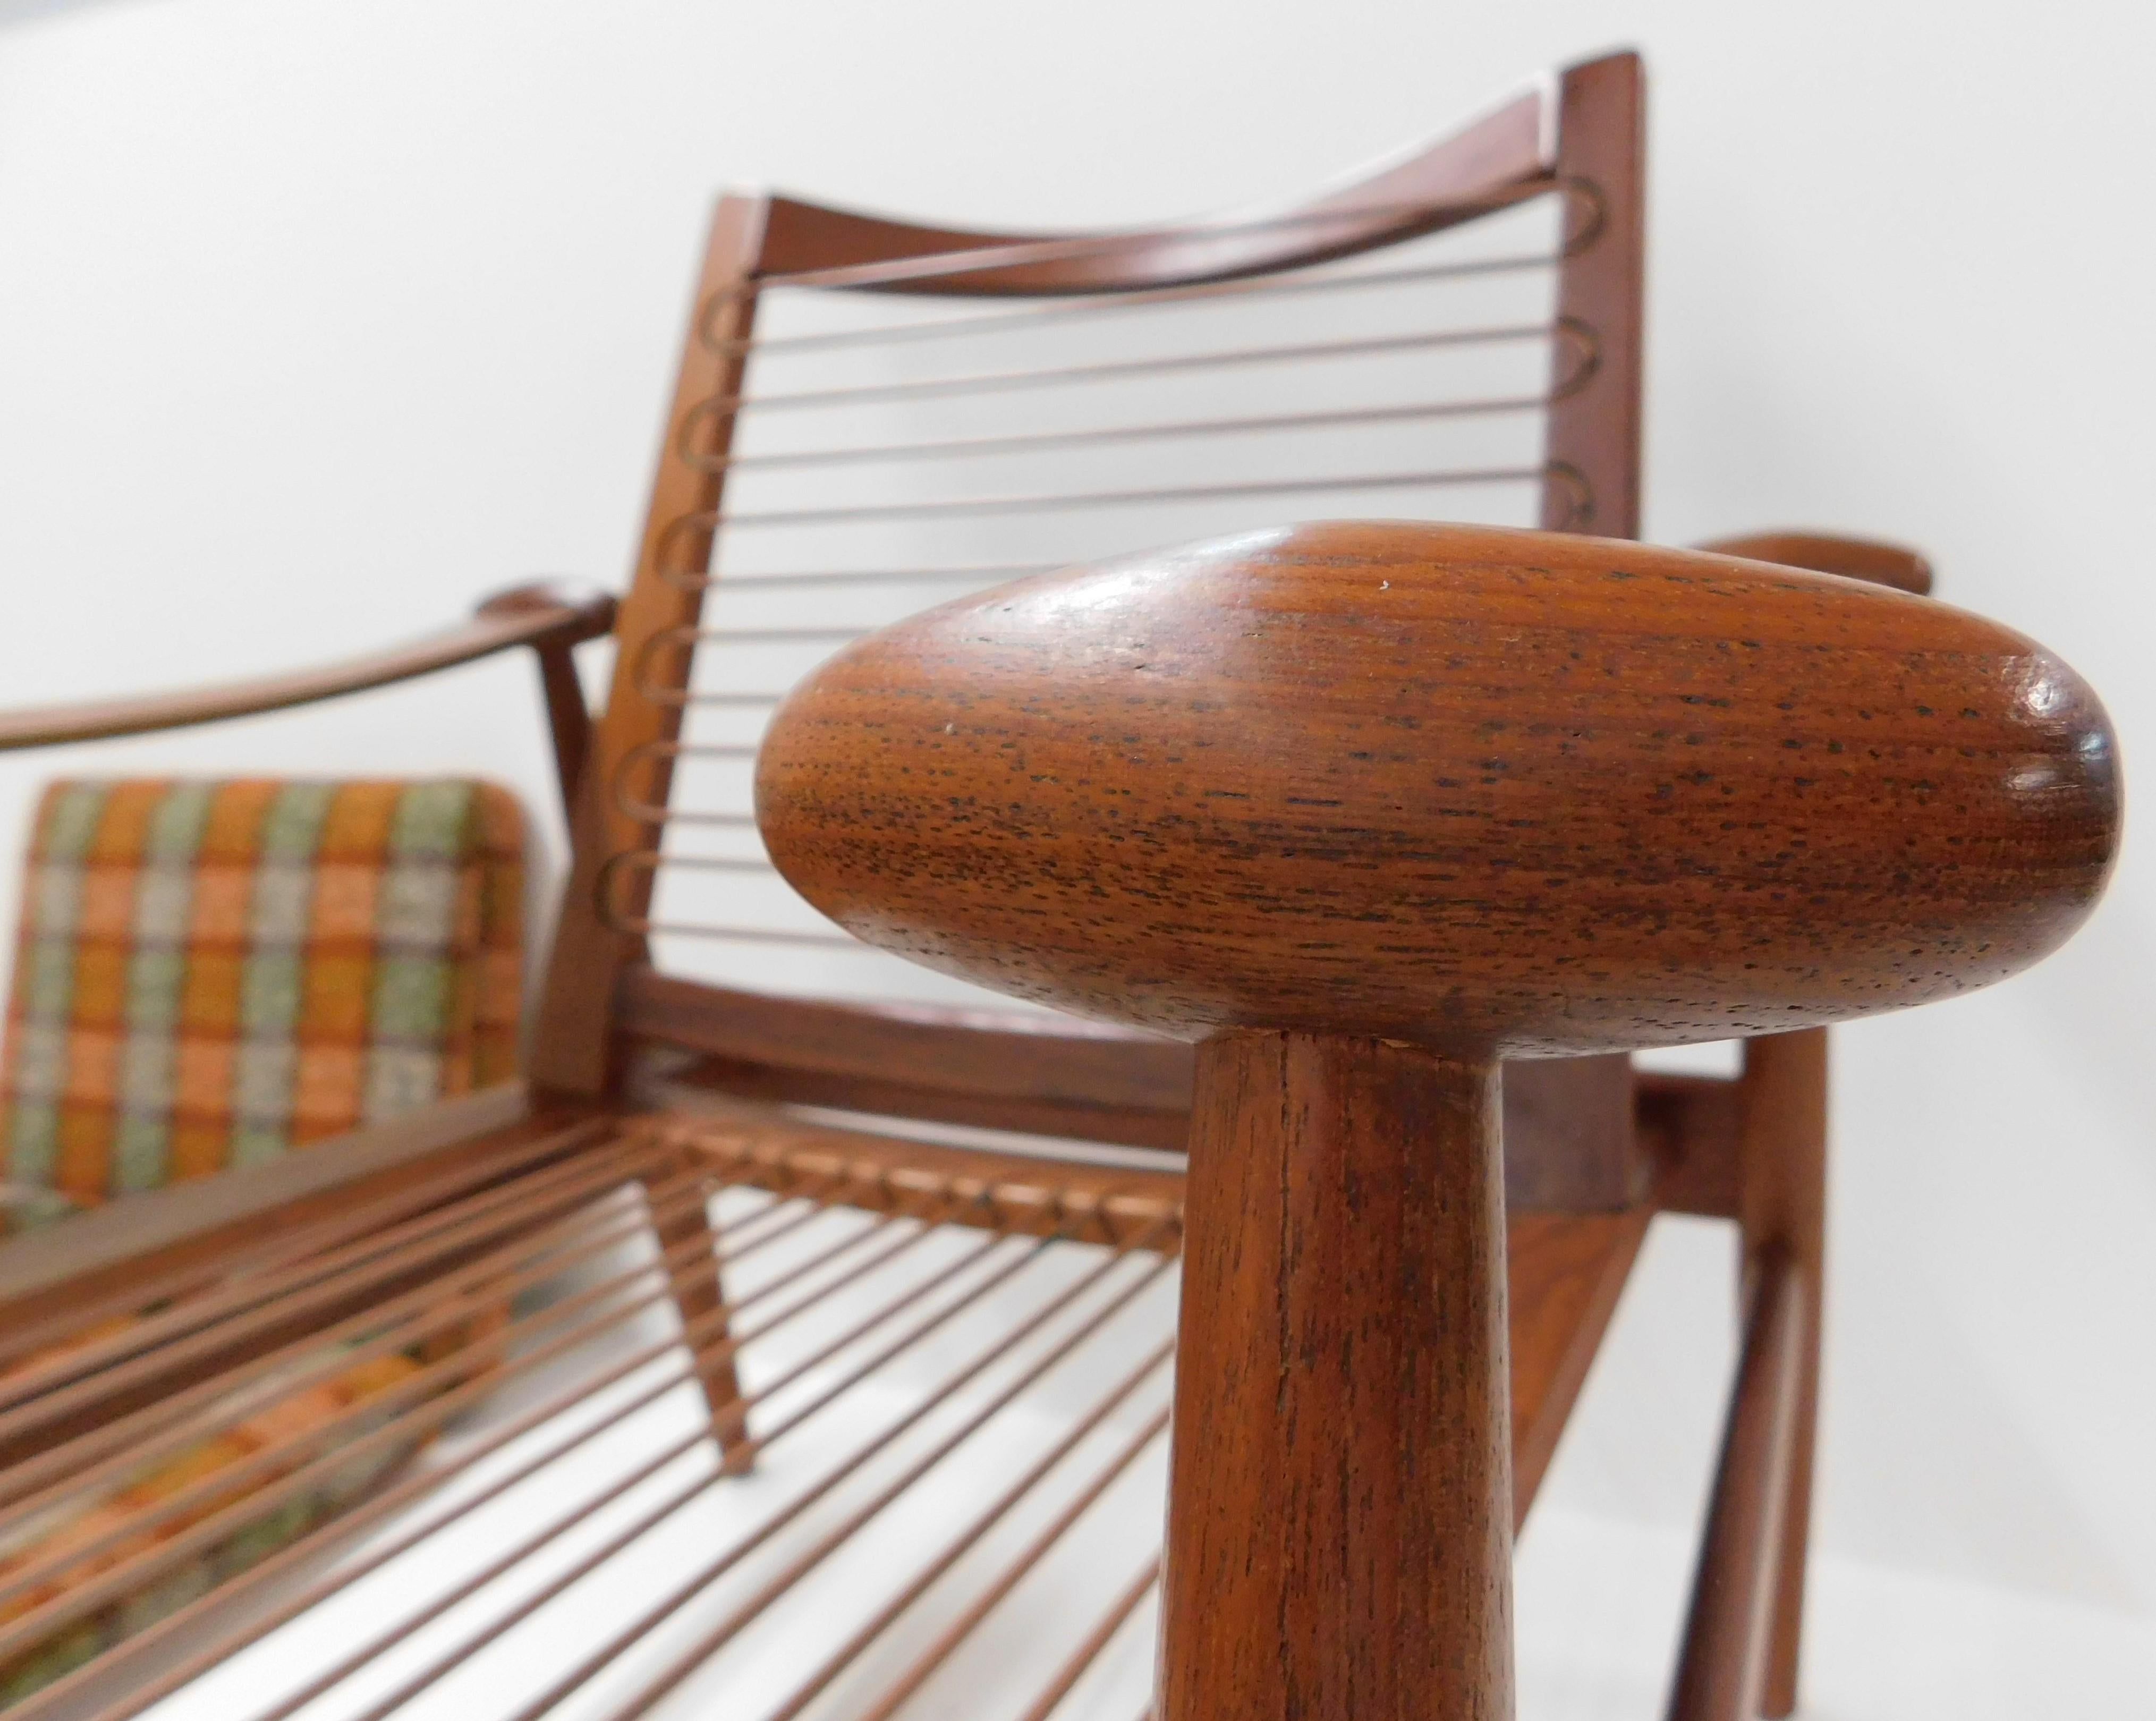 Pair of Finn Juhl 1953 Spade Teak Lounge Chair by France & Daverkosen Denmark 1